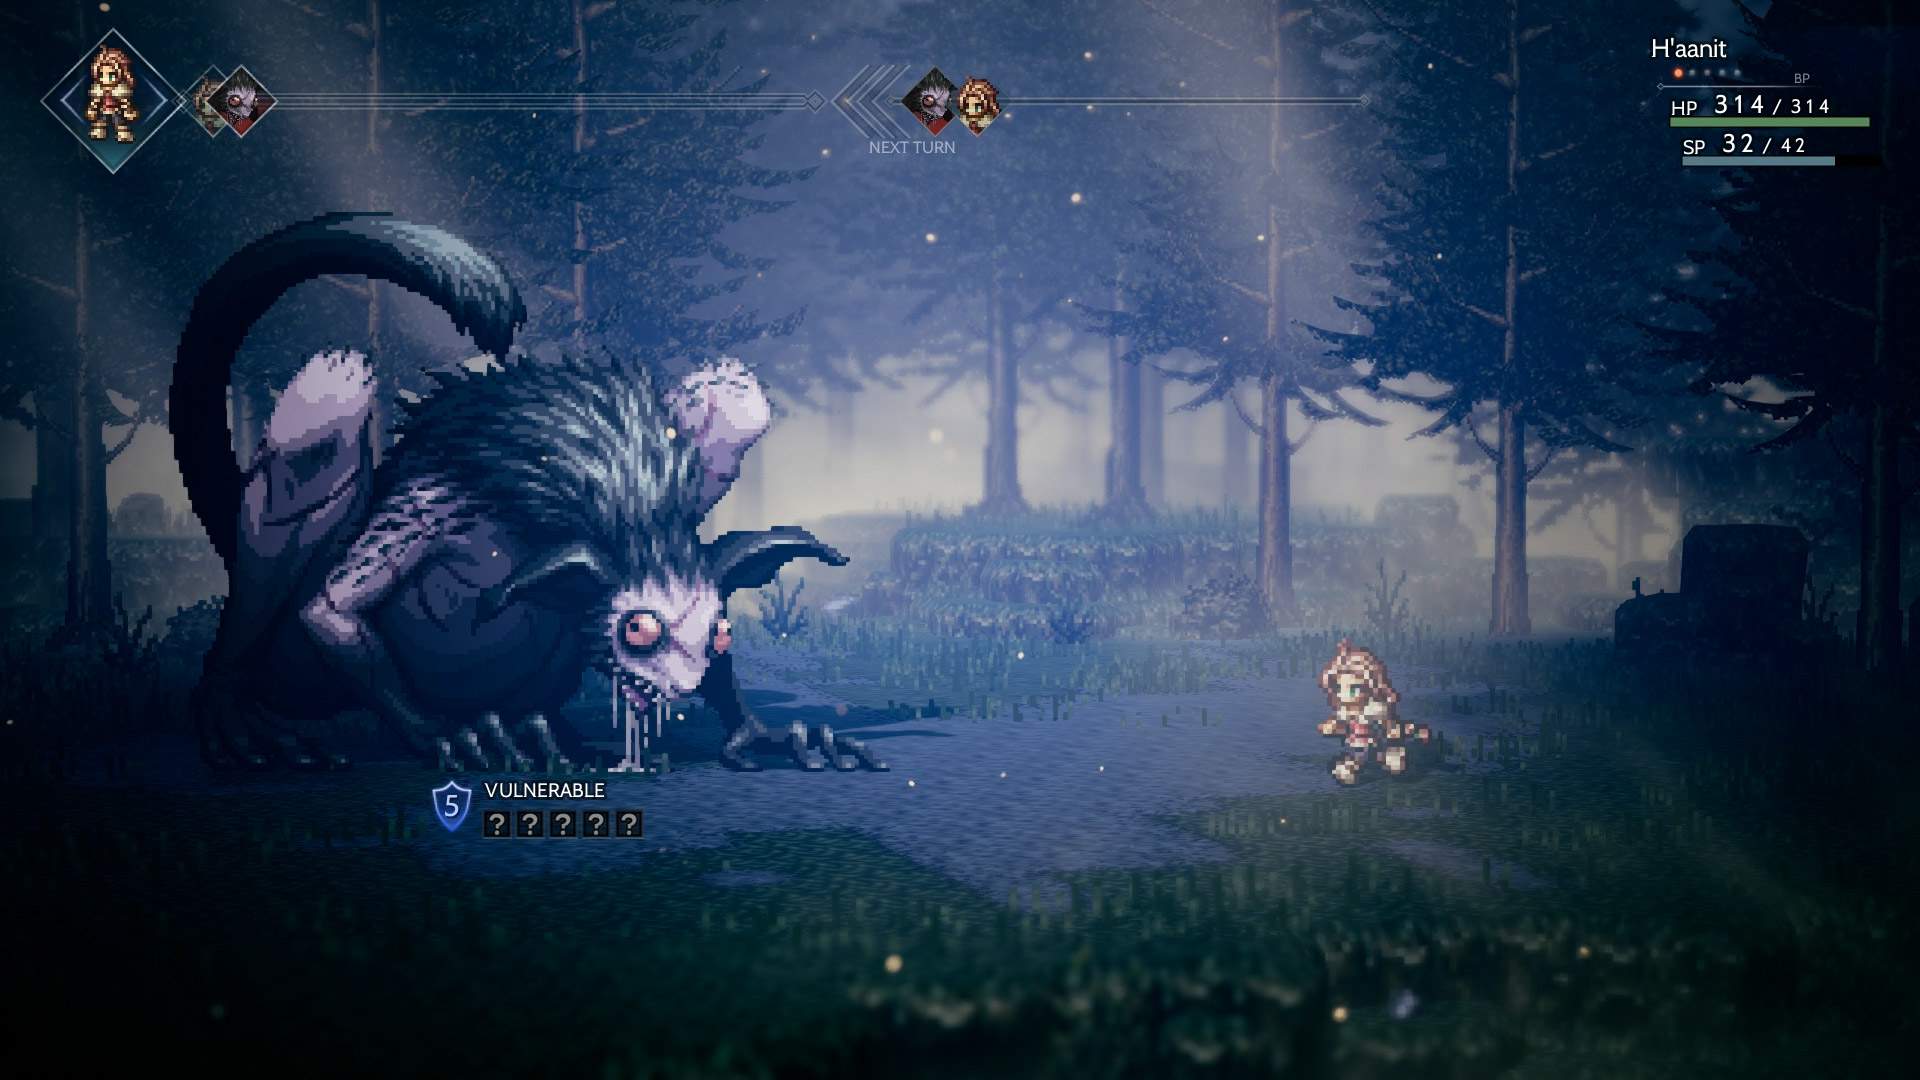 Capture d'écran d'un combat au cours duquel H'aanit affronte un  monstre imposant au tour par tour dans une forêt.